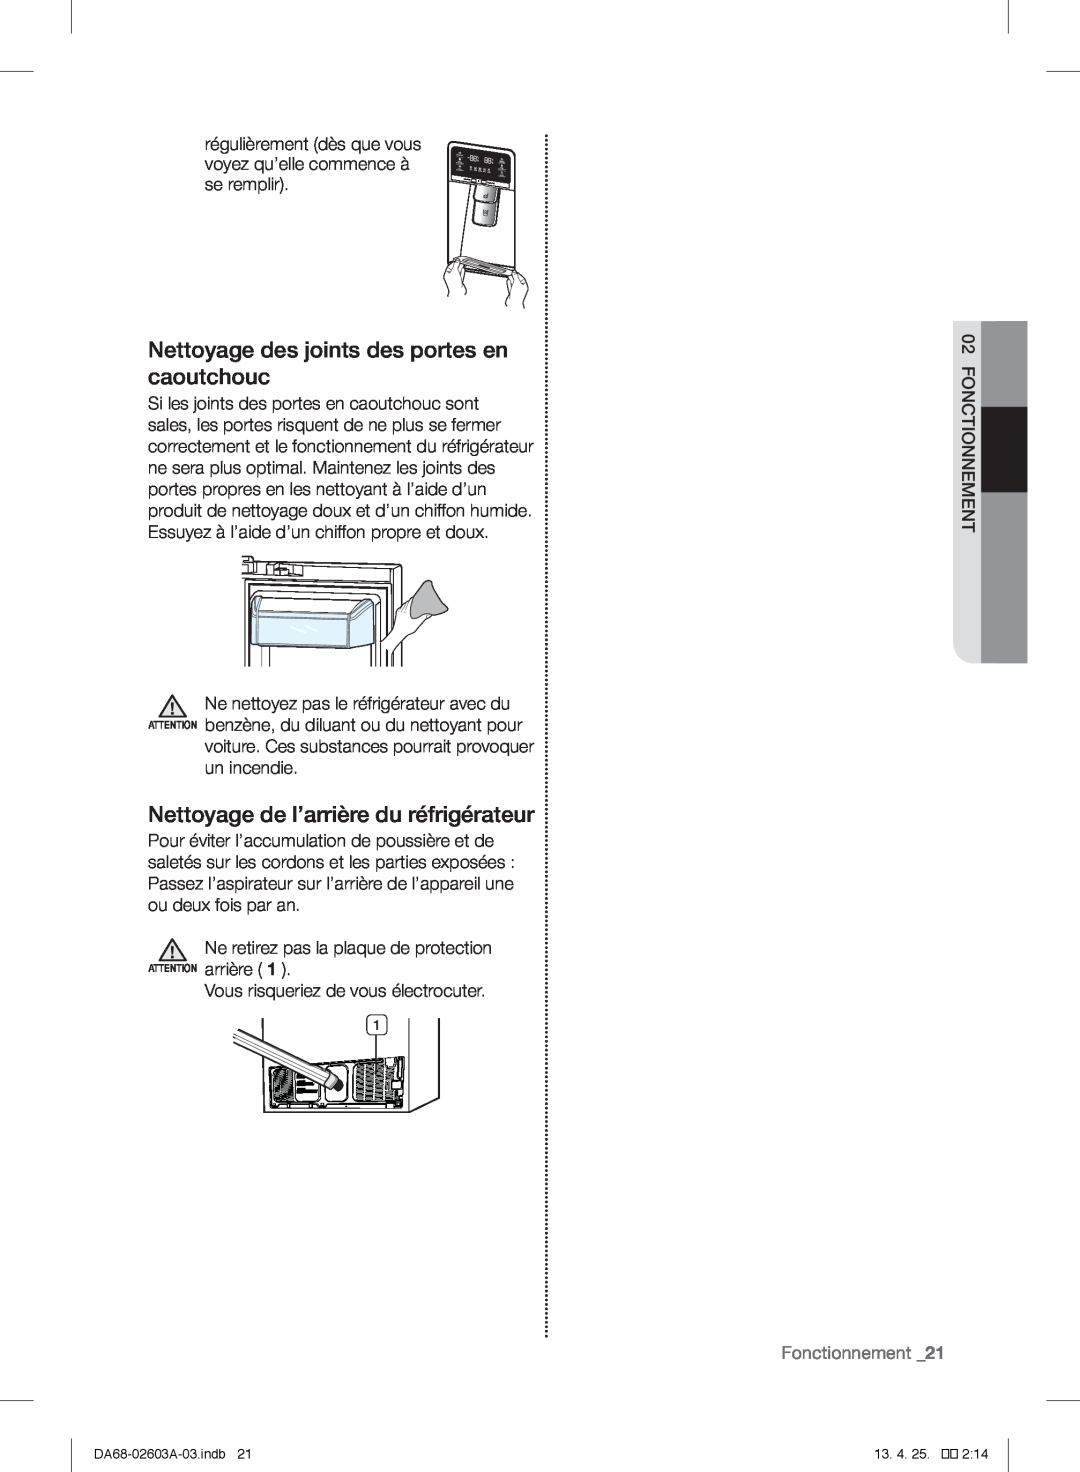 Samsung RF323TEDBBC Nettoyage des joints des portes en caoutchouc, Nettoyage de l’arrière du réfrigérateur, Fonctionnement 